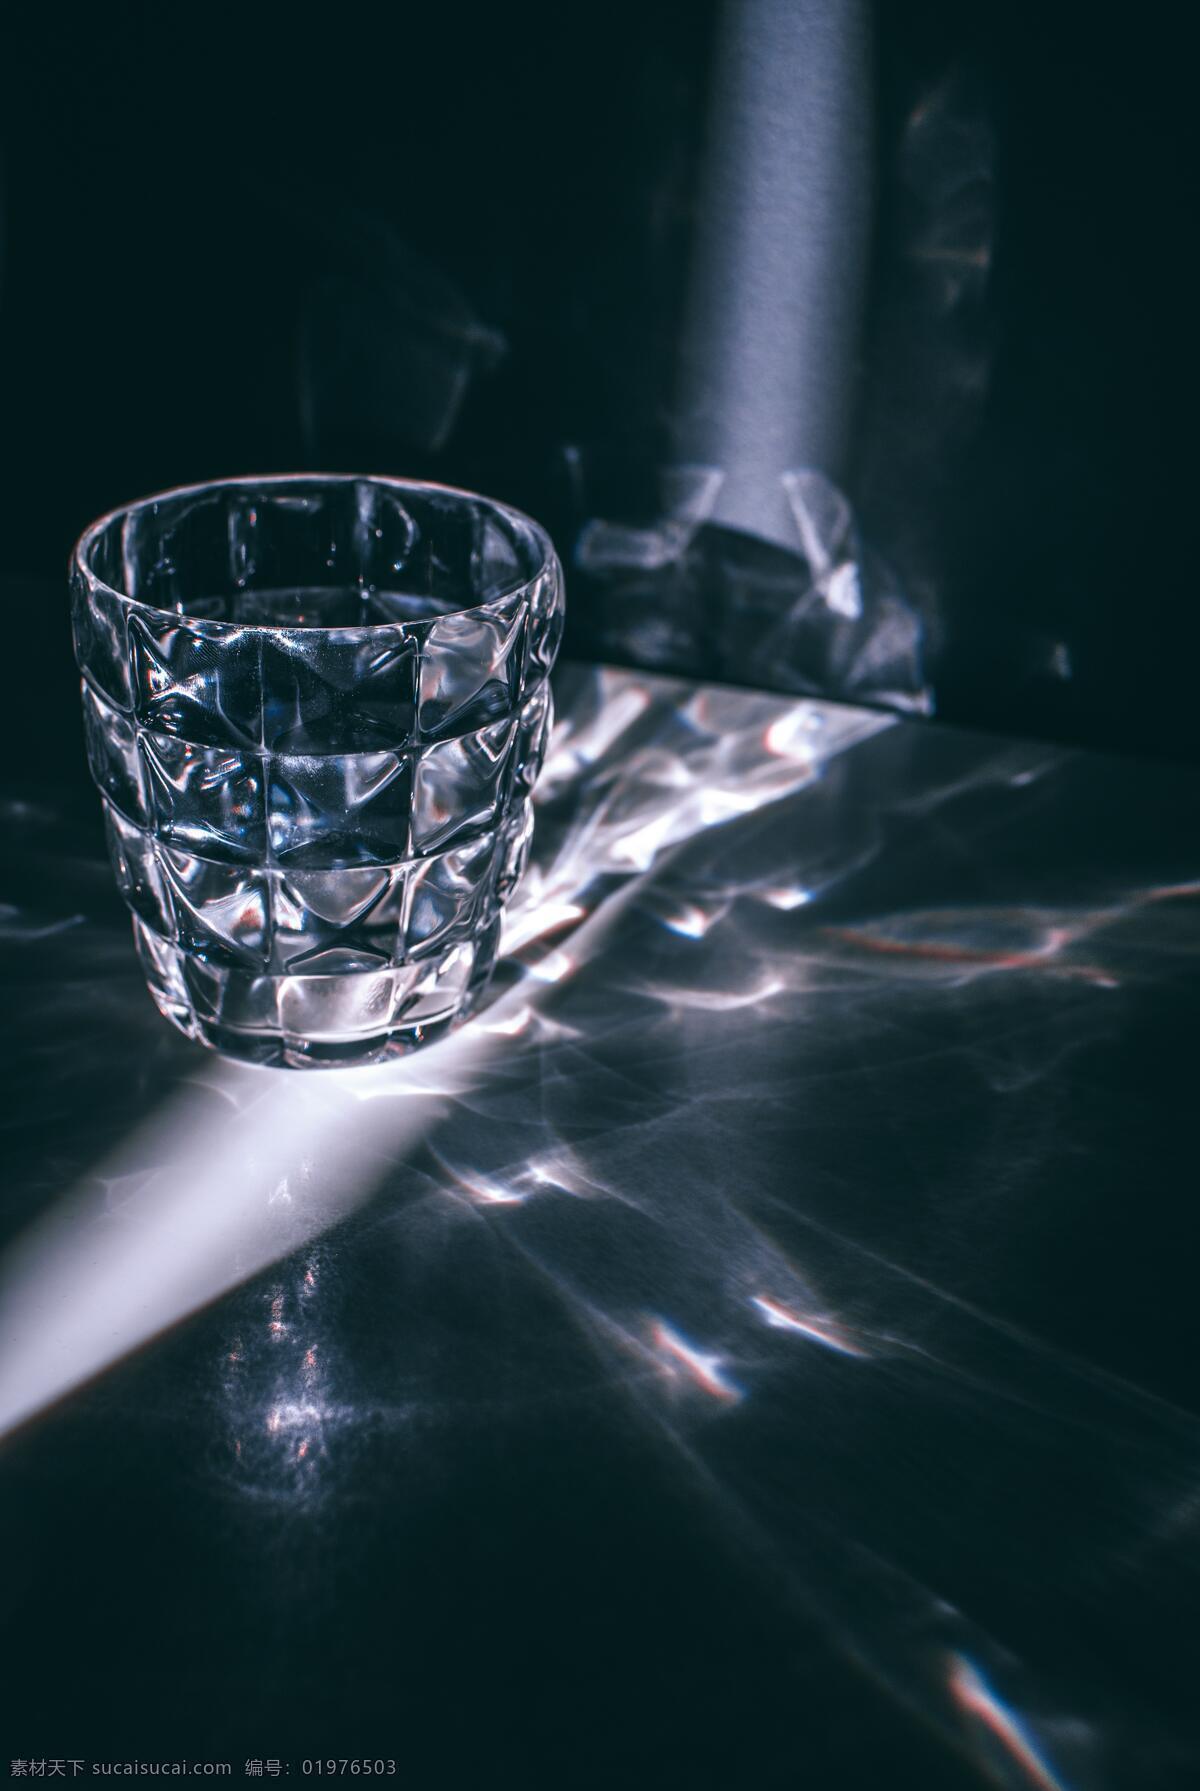 单层玻璃杯 水晶杯 玻璃杯素材 透明牛奶杯 玻璃酒杯 玻璃水杯 时尚水杯 玻璃容器 玻璃制品 透明玻璃杯 智能对象 贴图 提案 柯林杯 威士忌杯 海波杯 白酒杯 鸡尾酒杯 高脚杯 啤酒杯 生活用品 生活百科